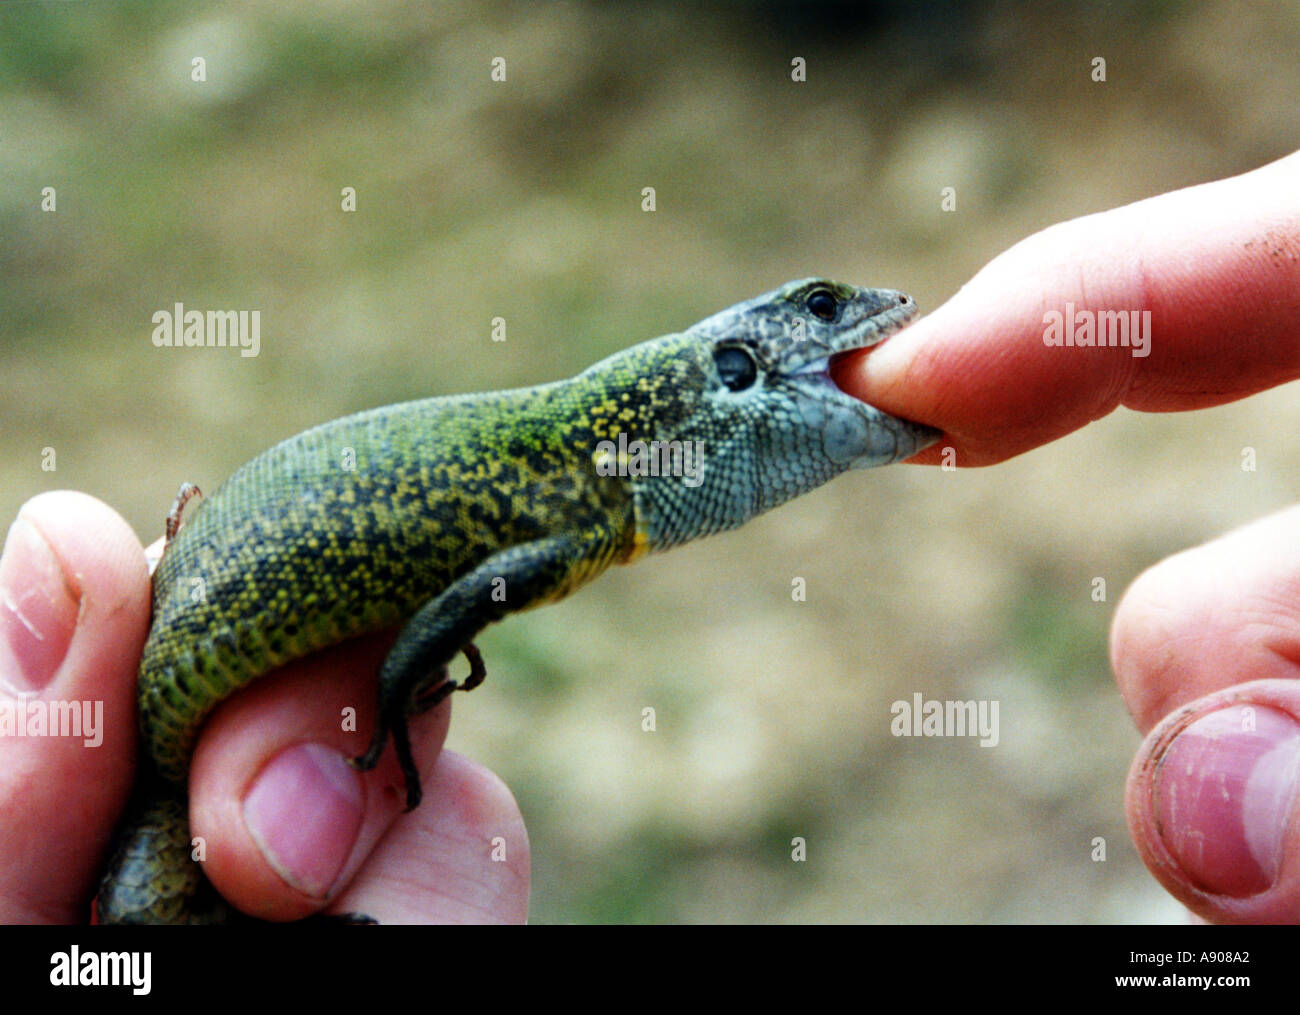 lizard bites man's finger Stock Photo